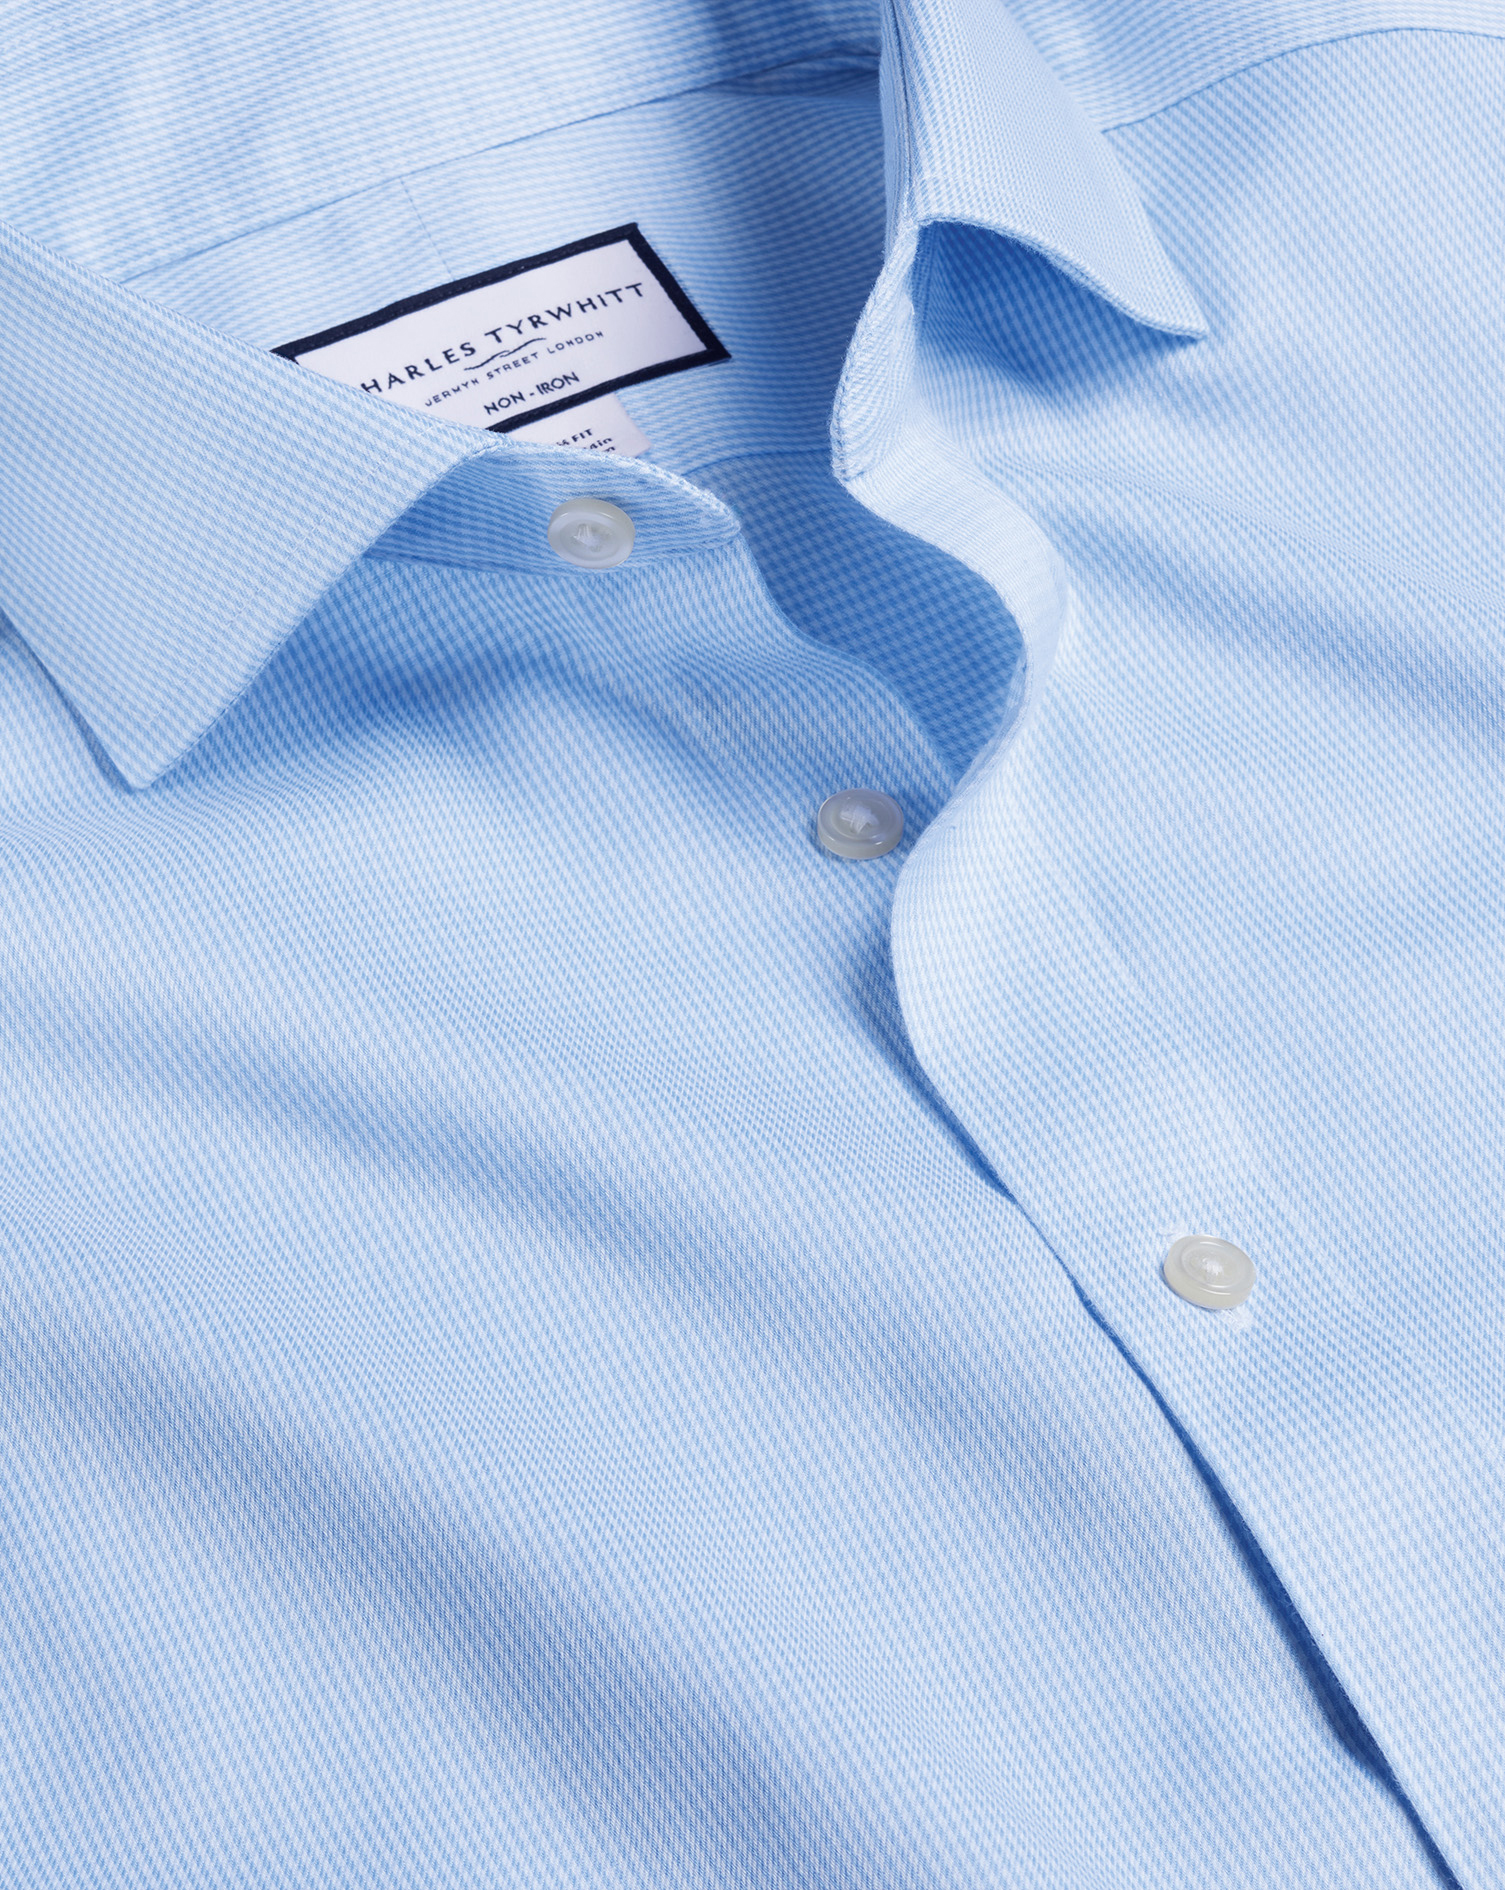 Men's Charles Tyrwhitt Cutaway Collar Non-Iron Puppytooth Dress Shirt - Sky Blue Single Cuff Size Sm